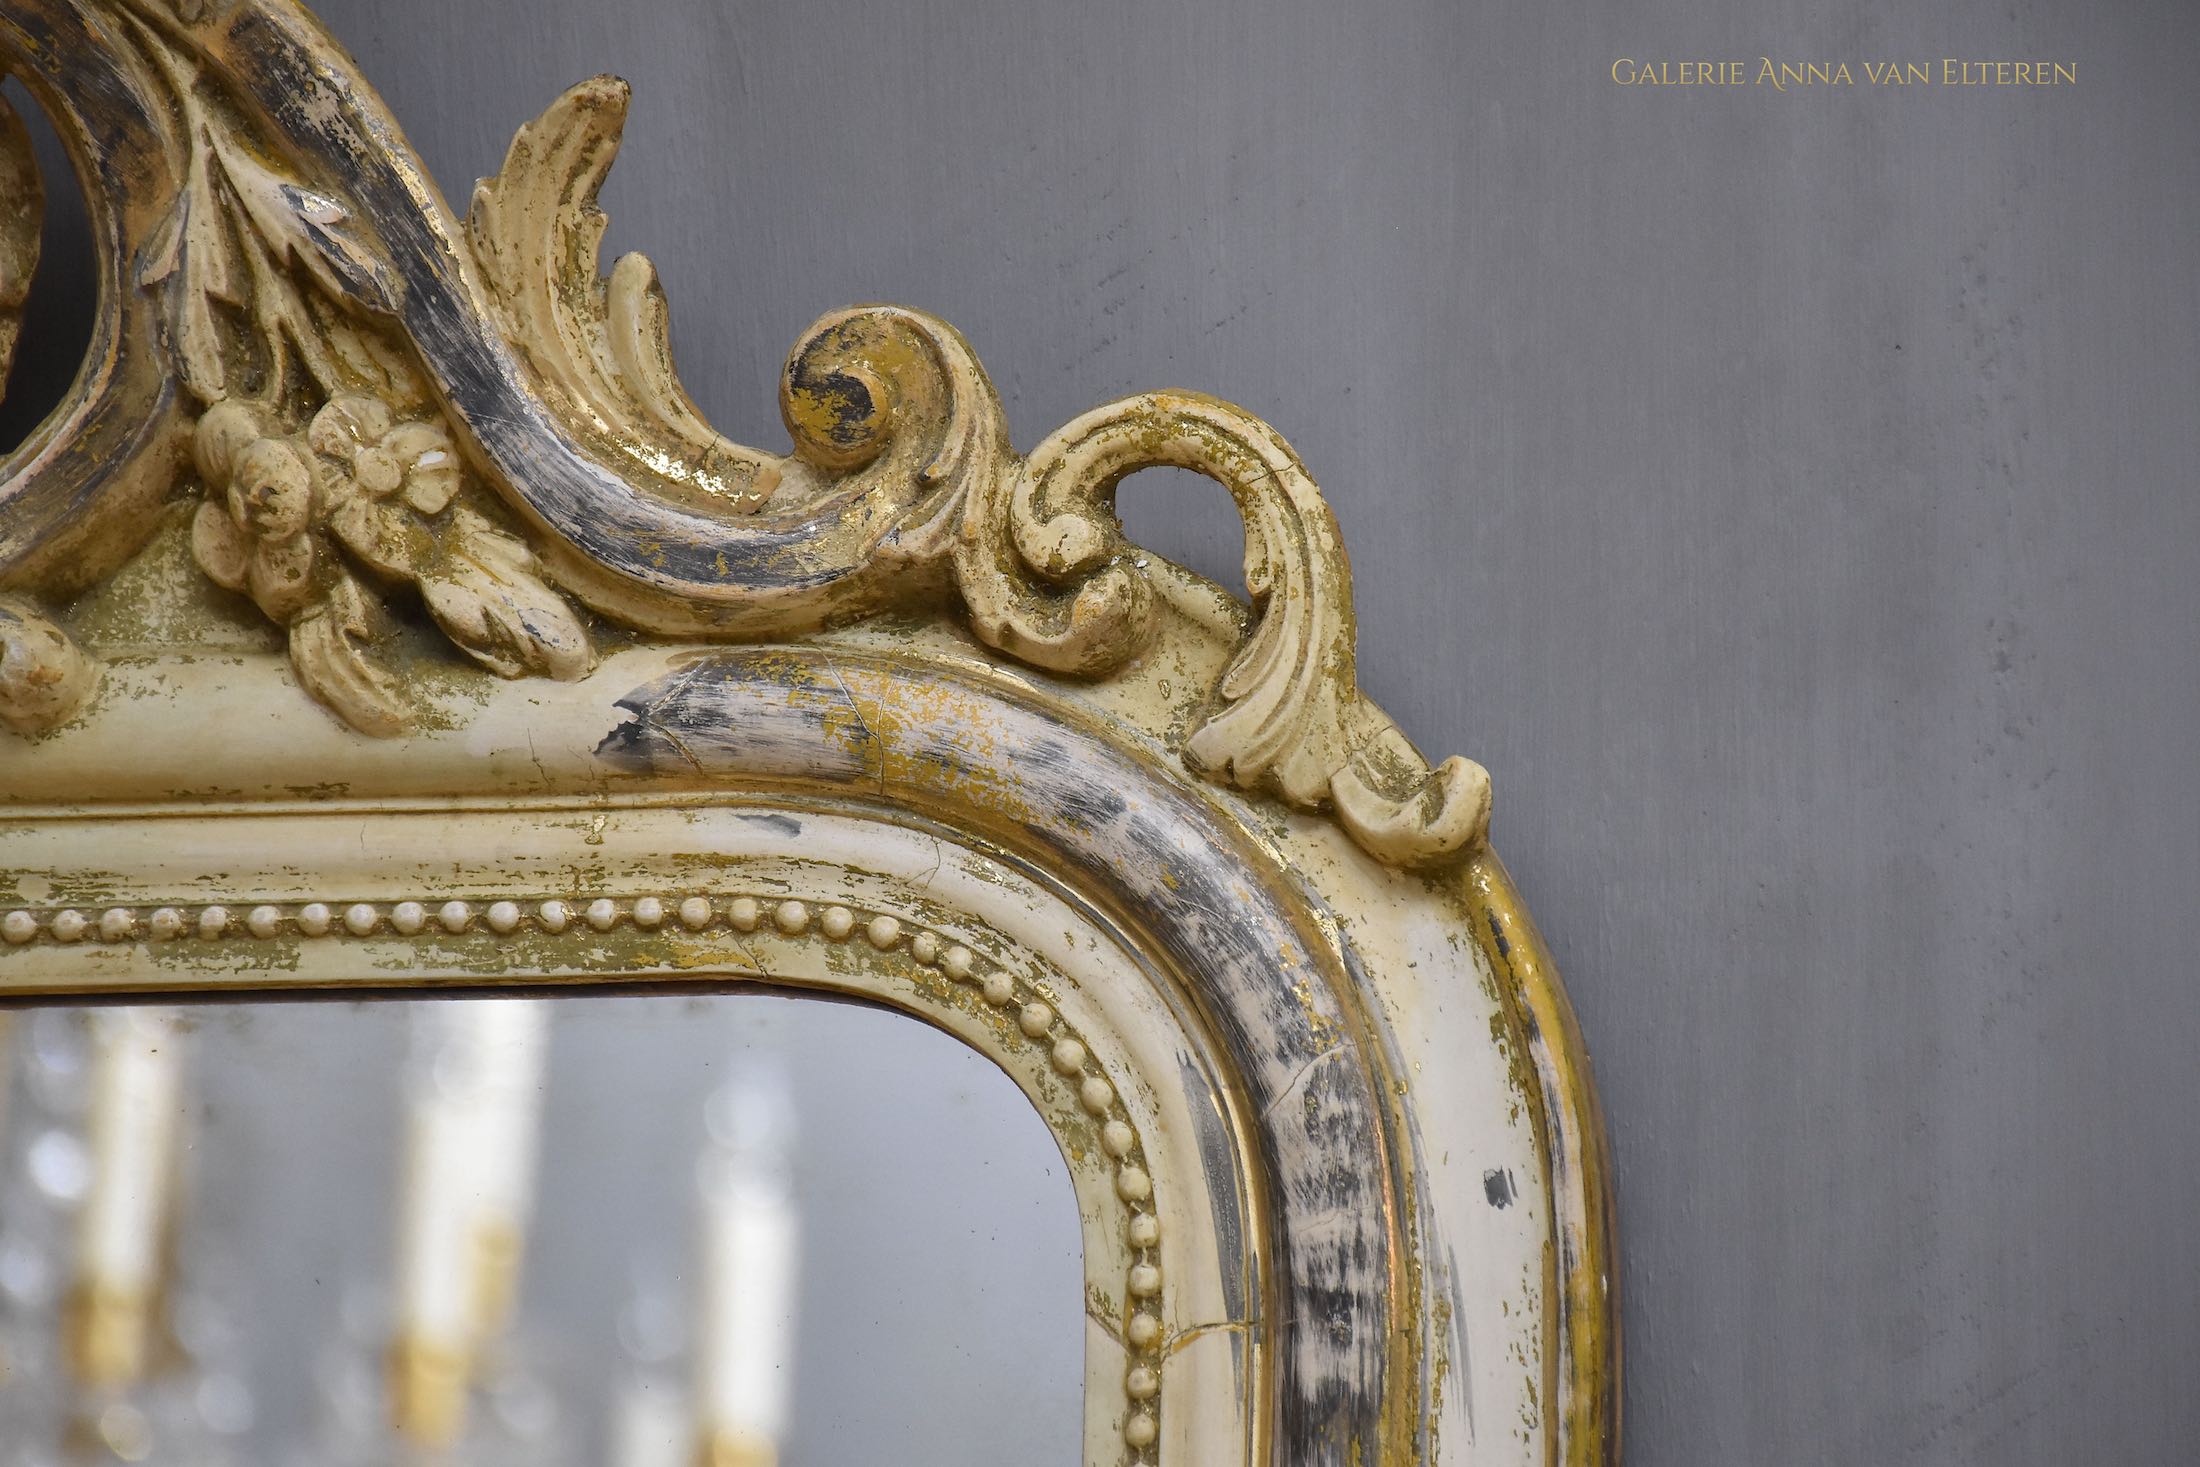 Antieke Franse spiegel met een kuif